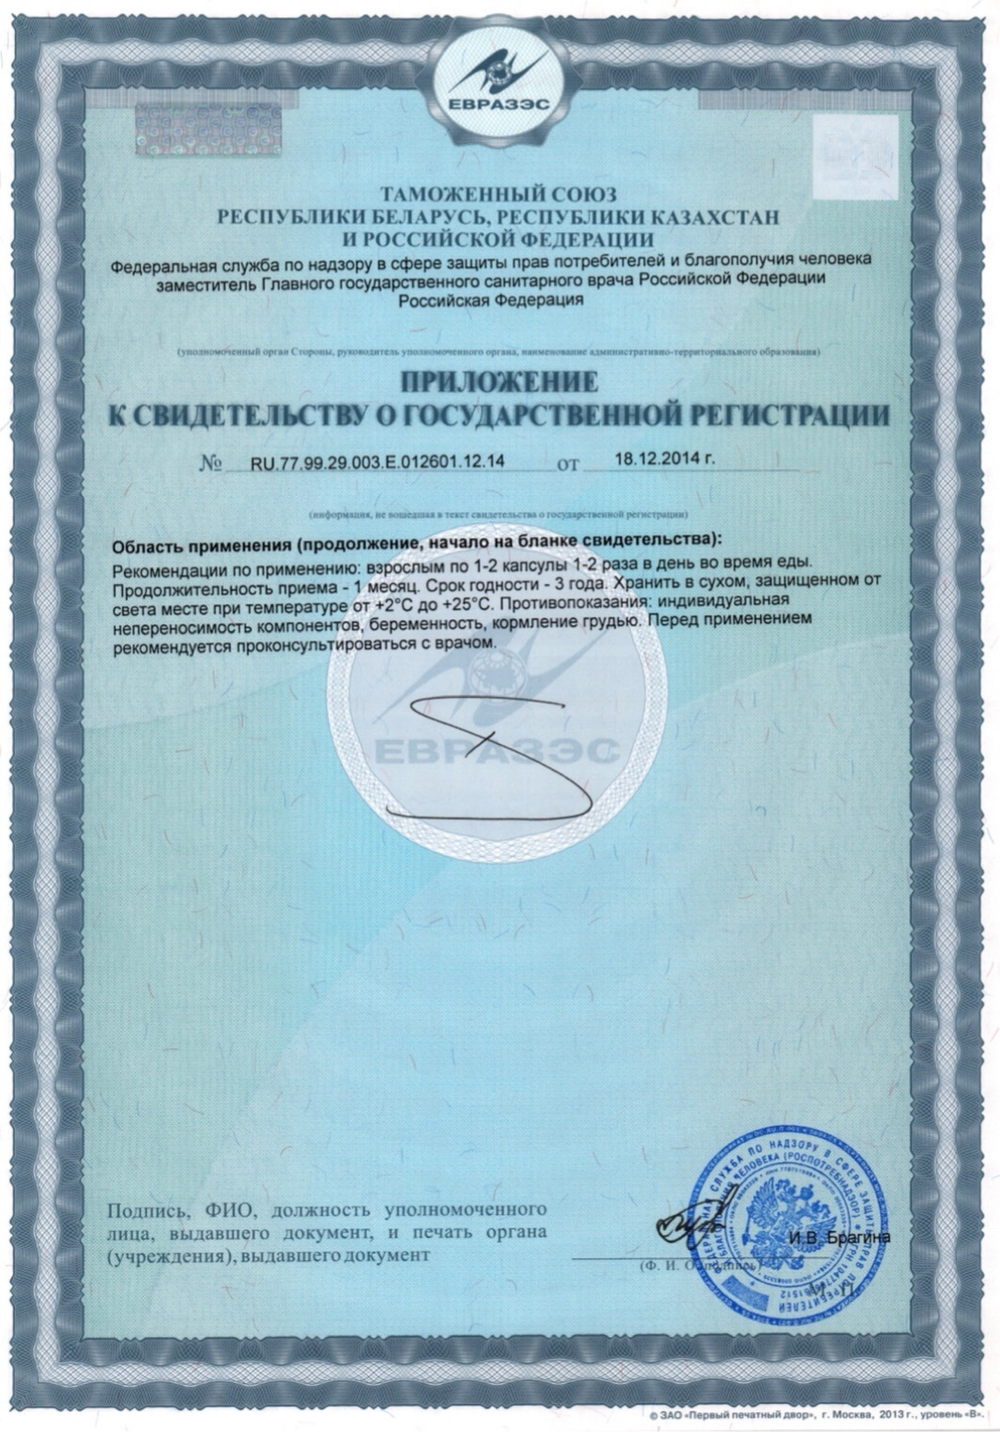 PROTECTOR 3 Plus® пептидный комплекс сертификат